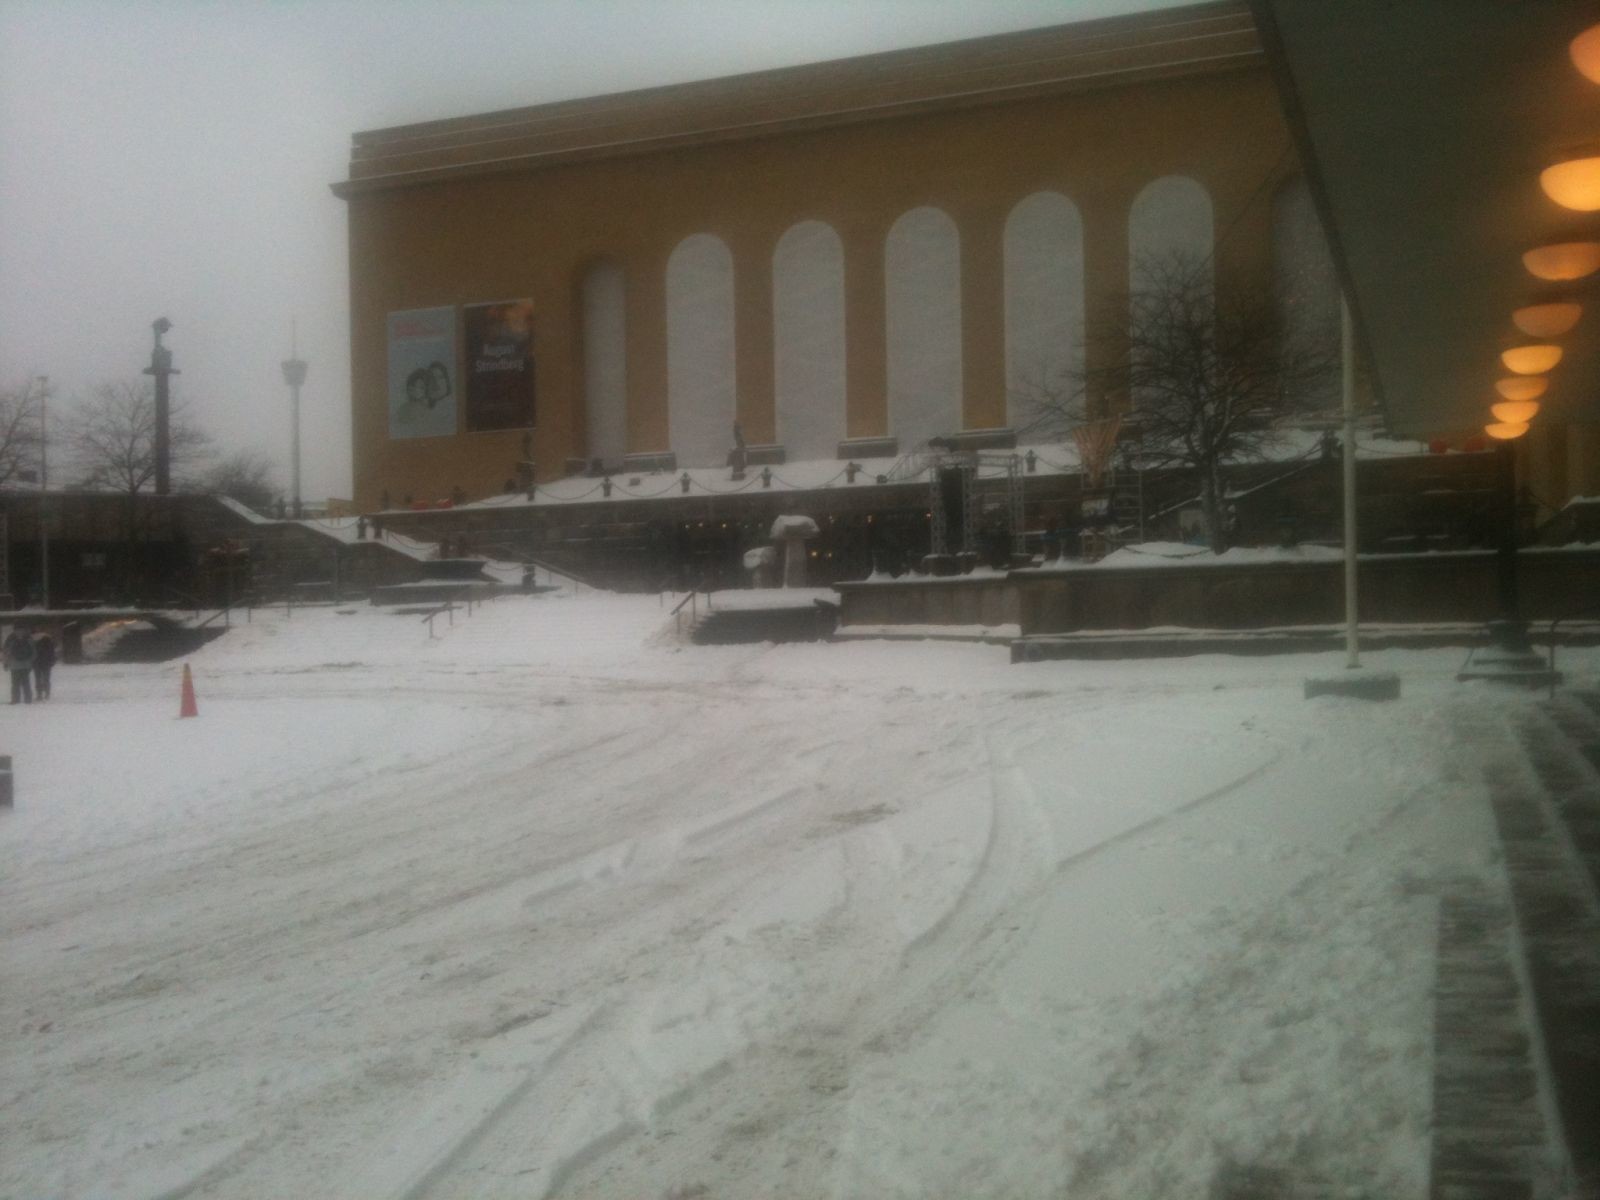 Gothenburg snow